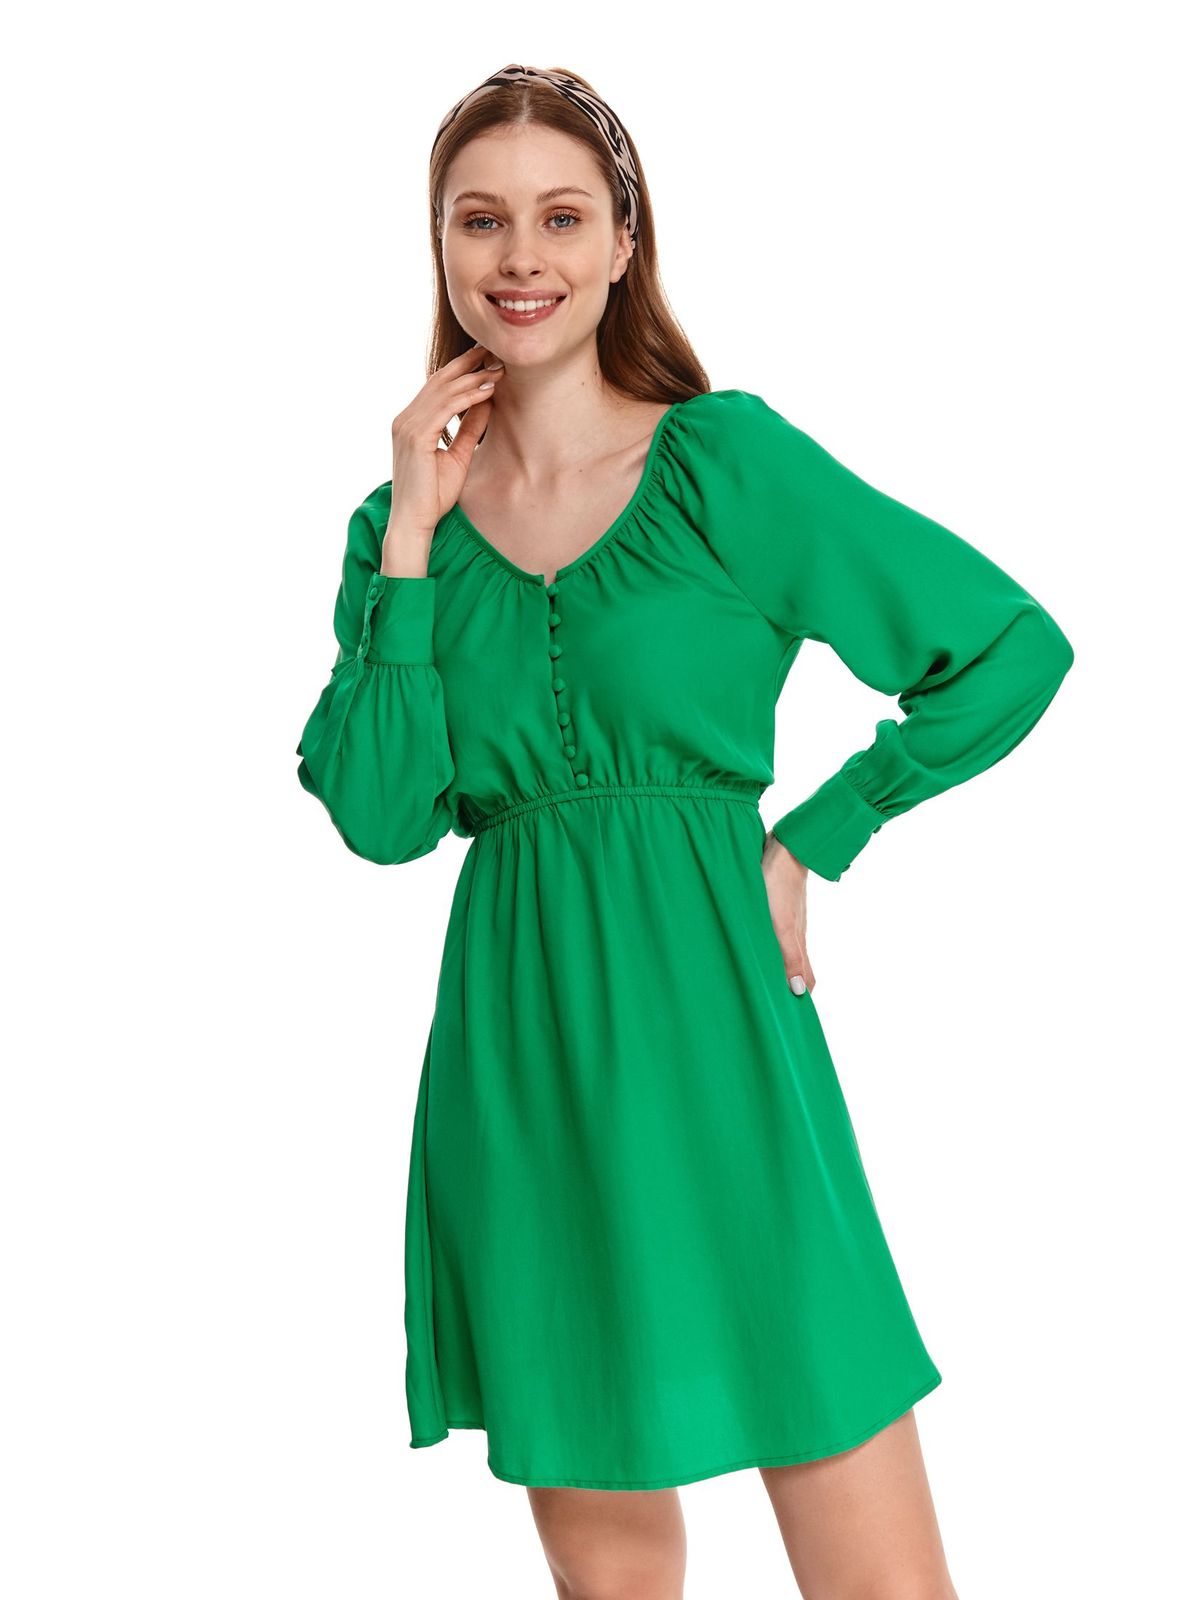 Rochie din material subtire verde scurta in clos cu elastic in talie - Top Secret